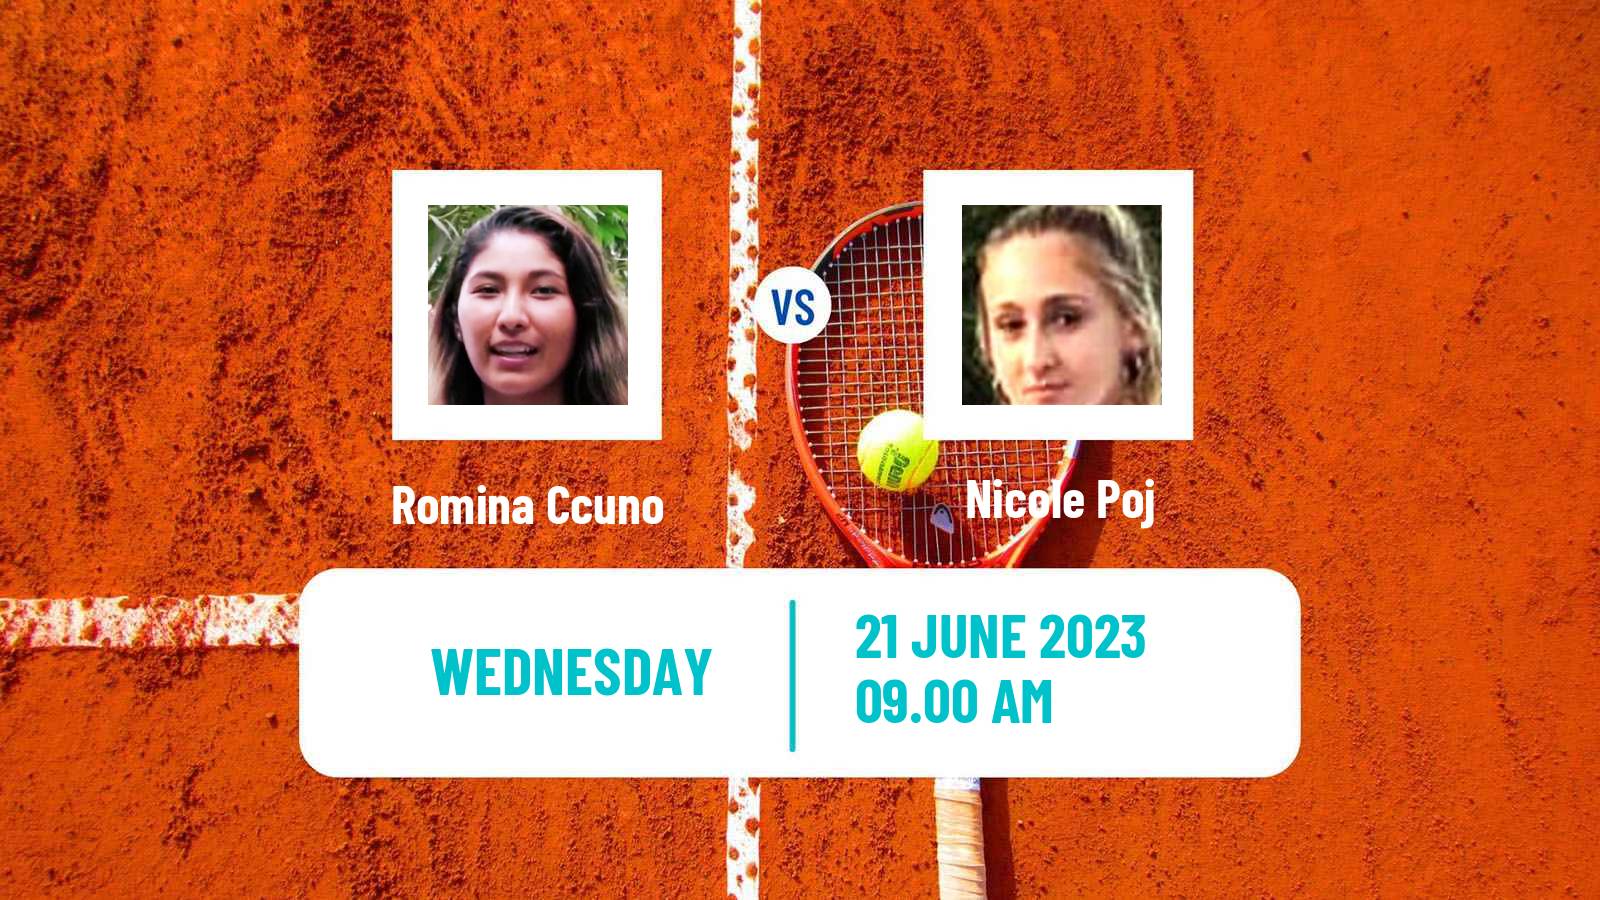 Tennis ITF W15 Buenos Aires Women Romina Ccuno - Nicole Poj